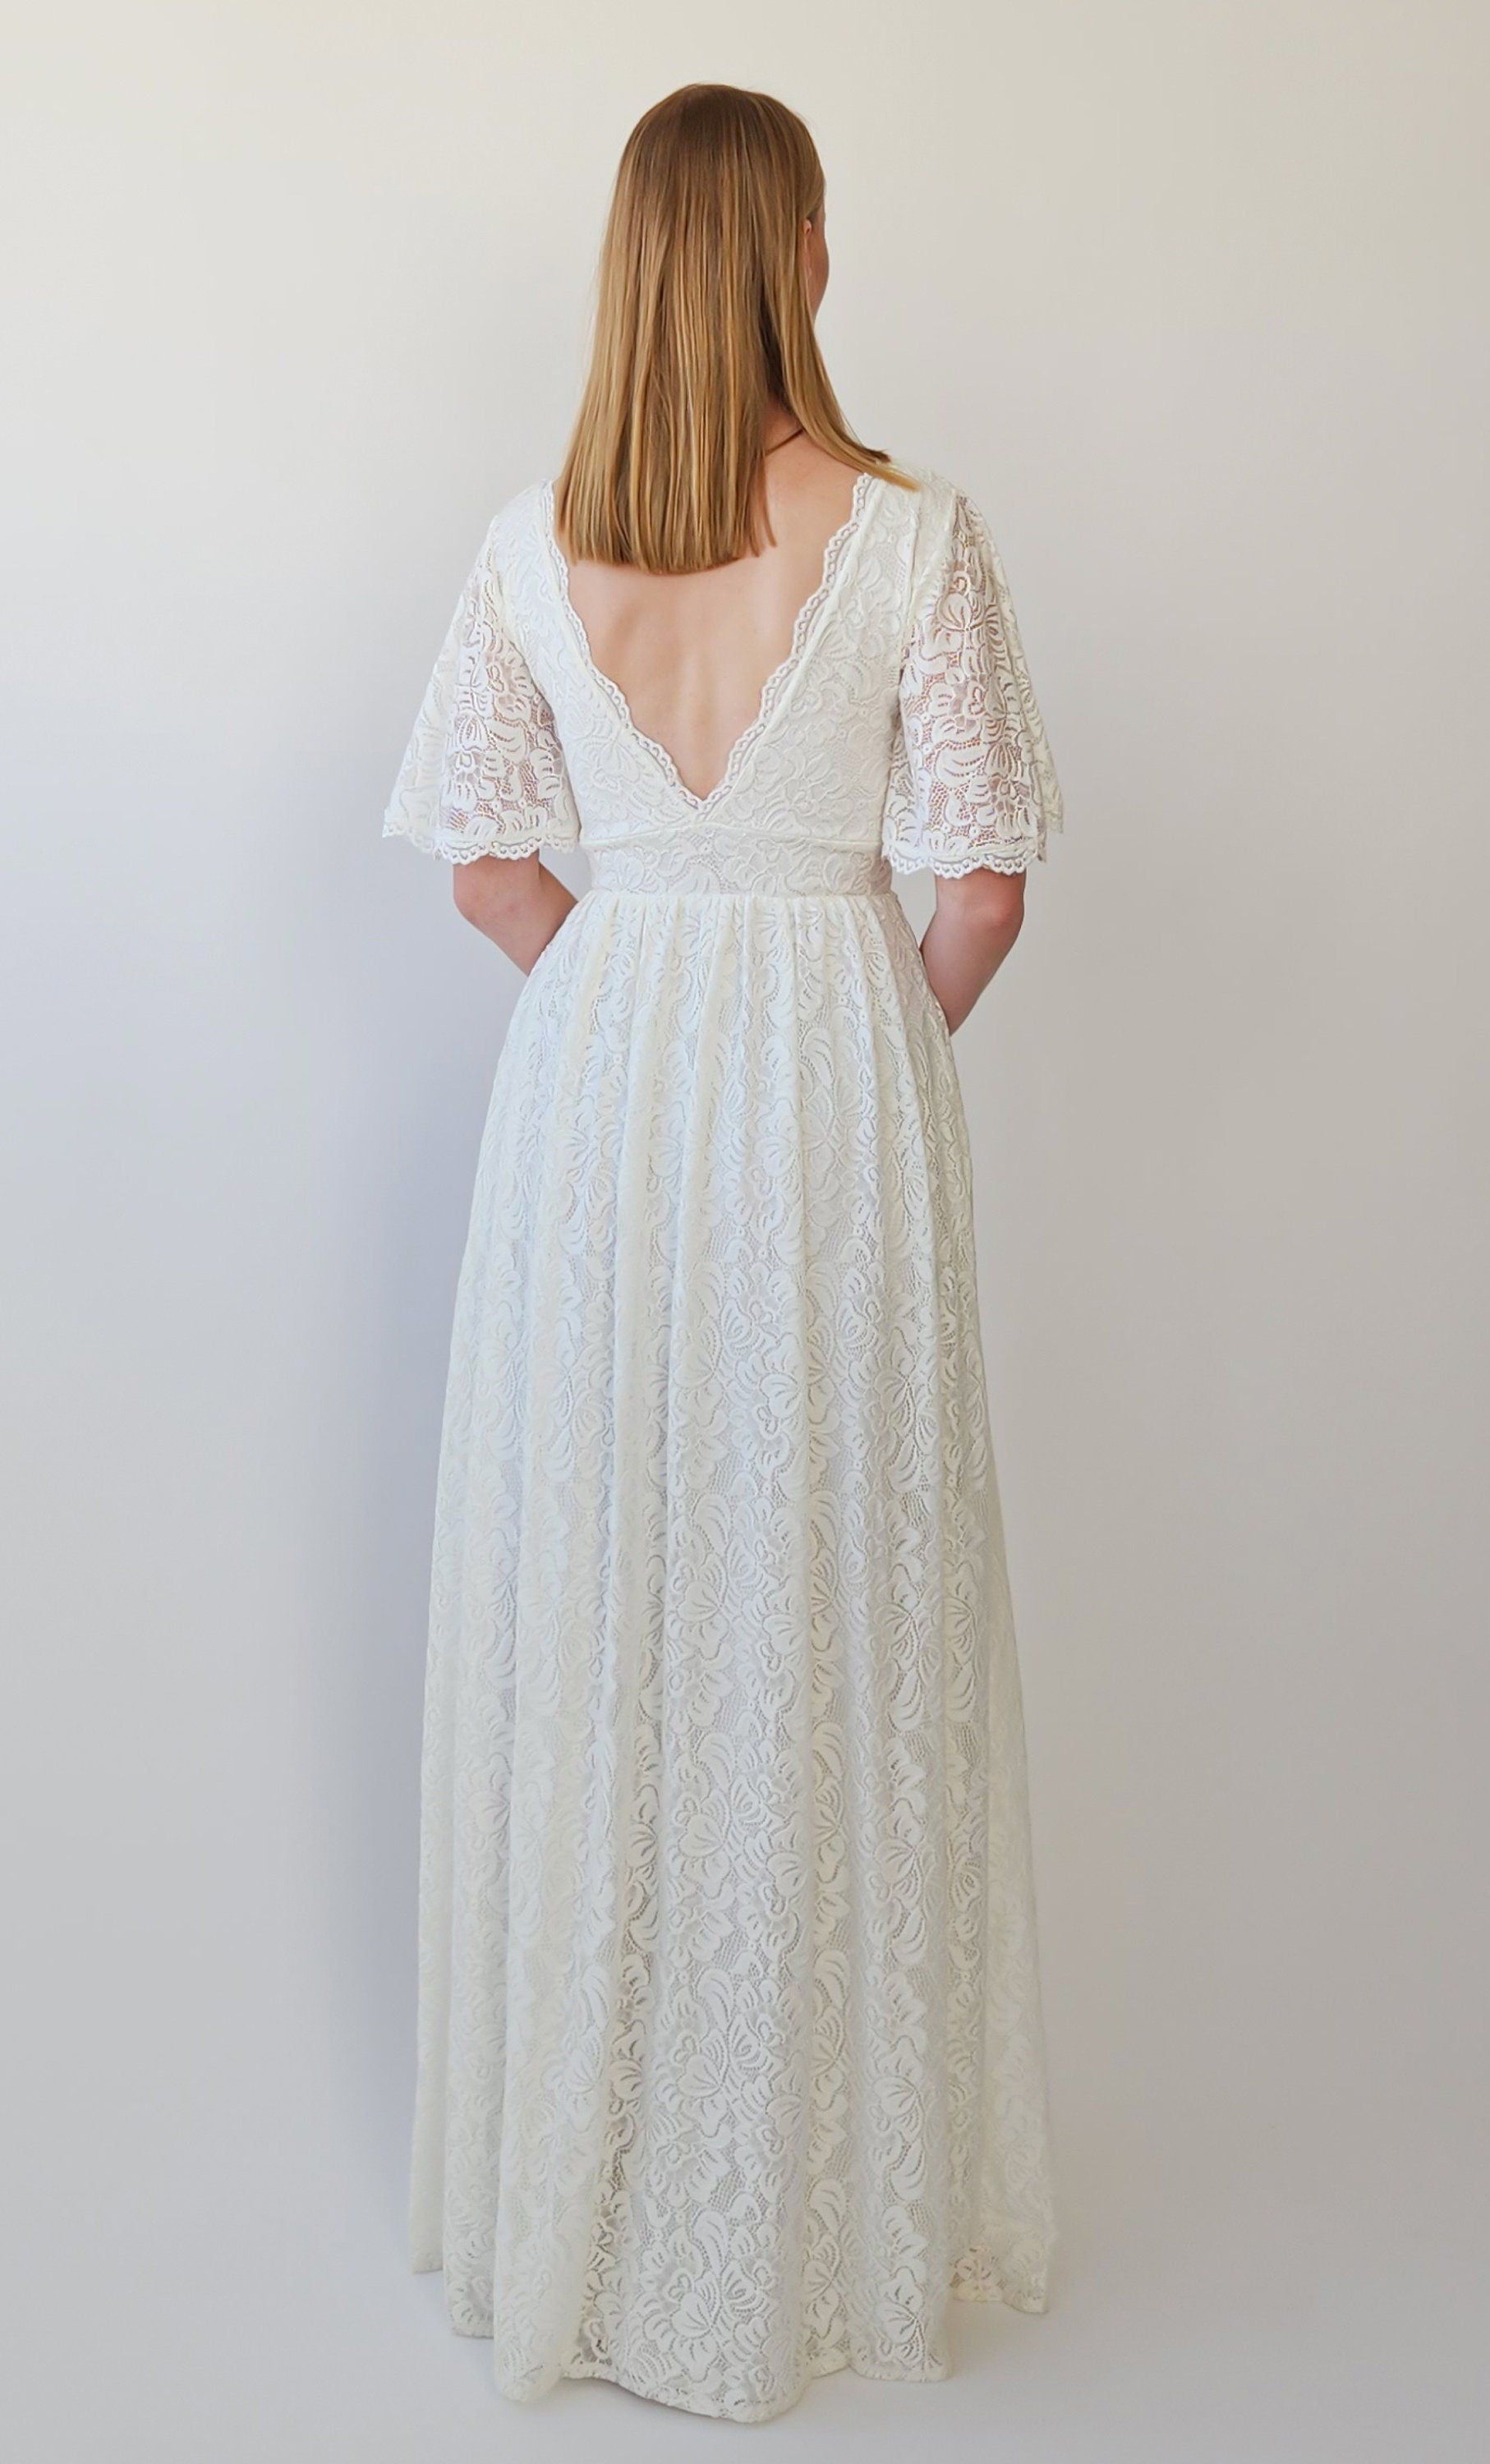 Plus-Size Boho Wedding Dress with Lace